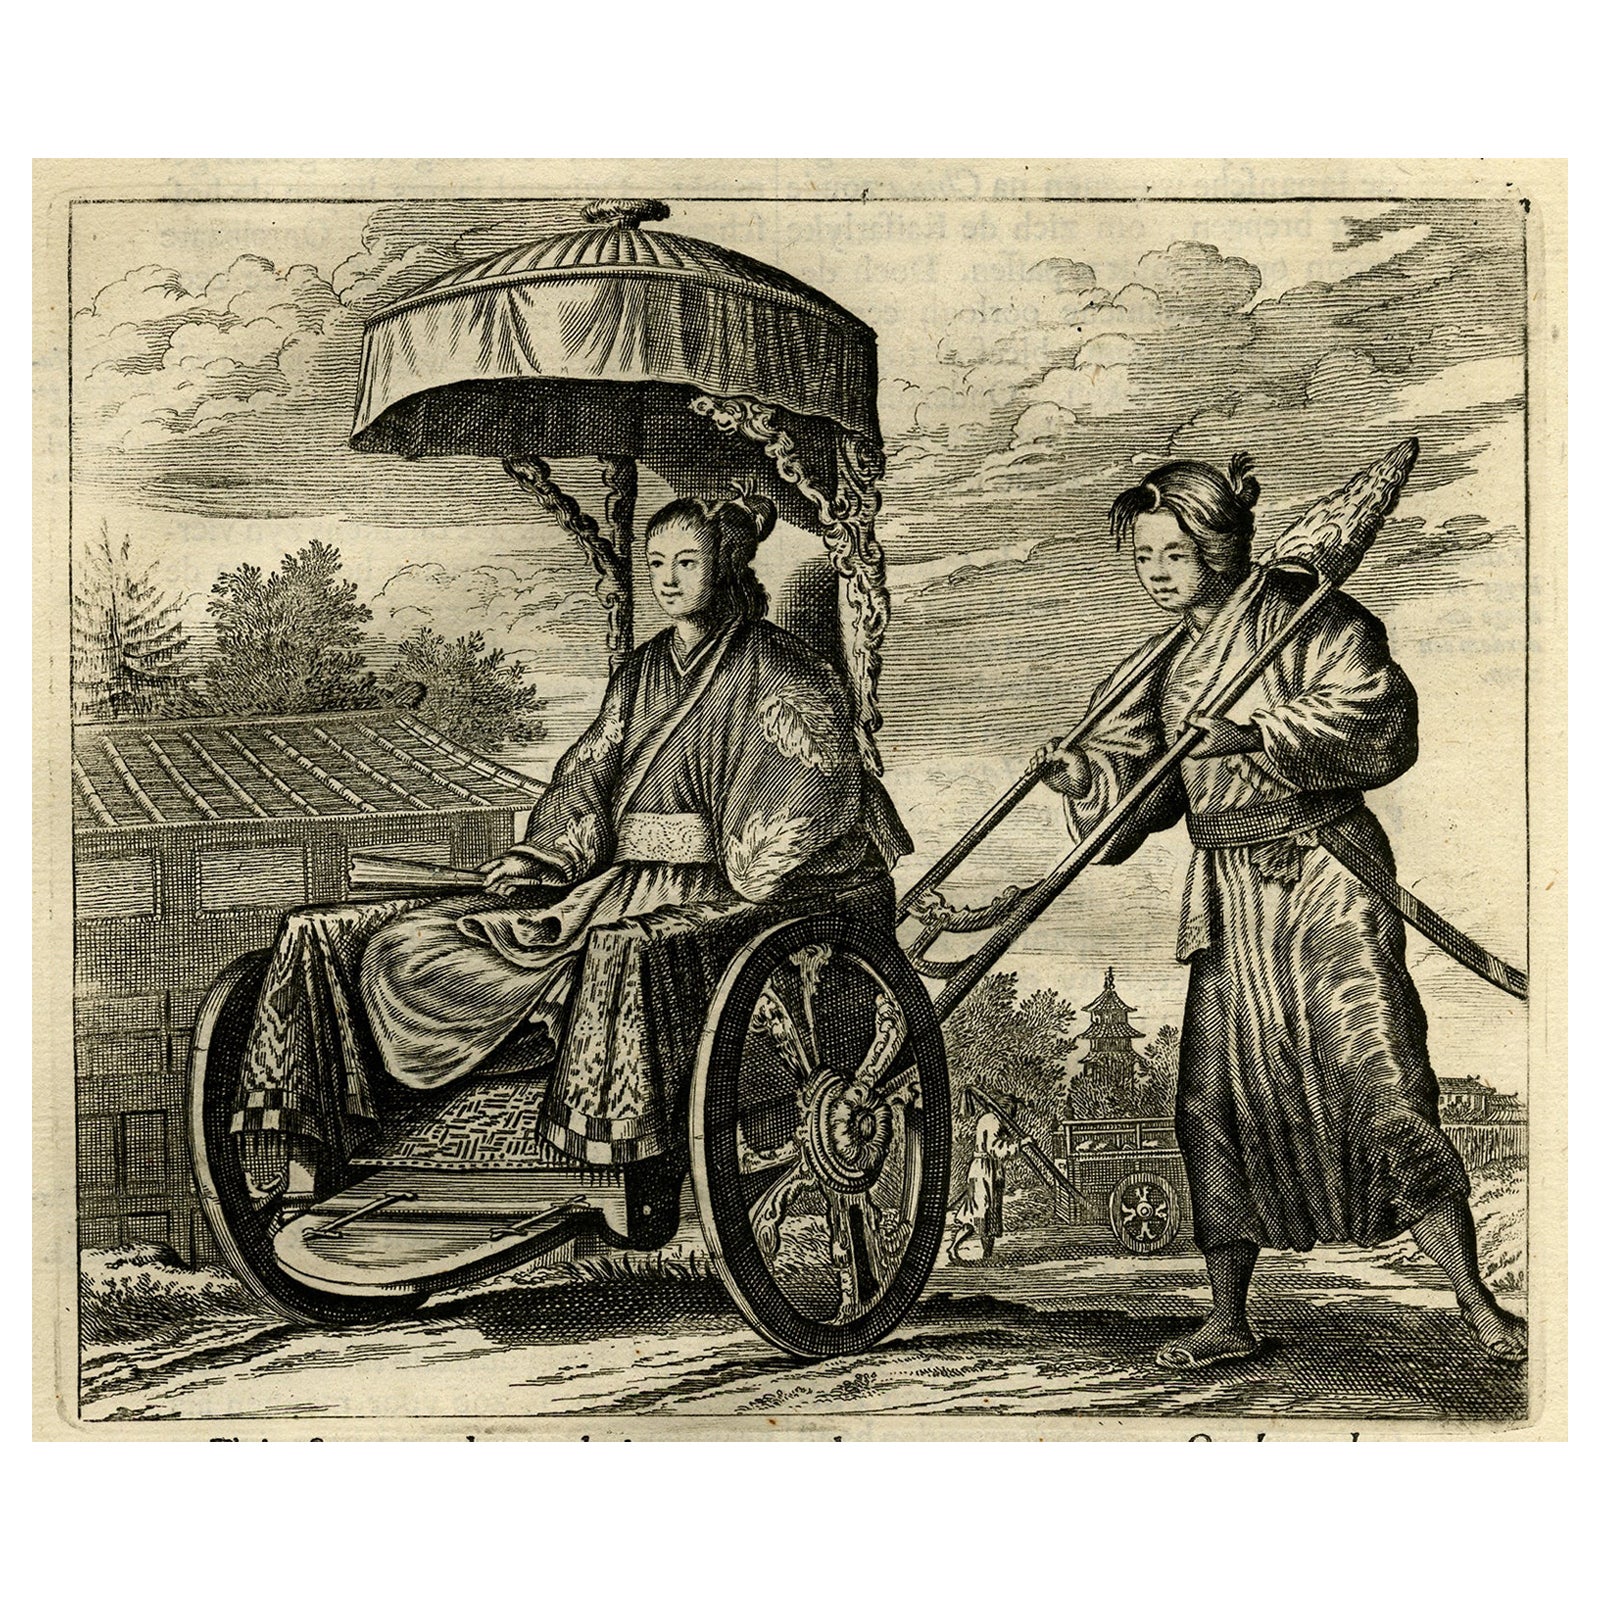 Old Print einer japanischen Adelsfrau, transportiert in einem Rickshaw oder Jinrikisha, 1669